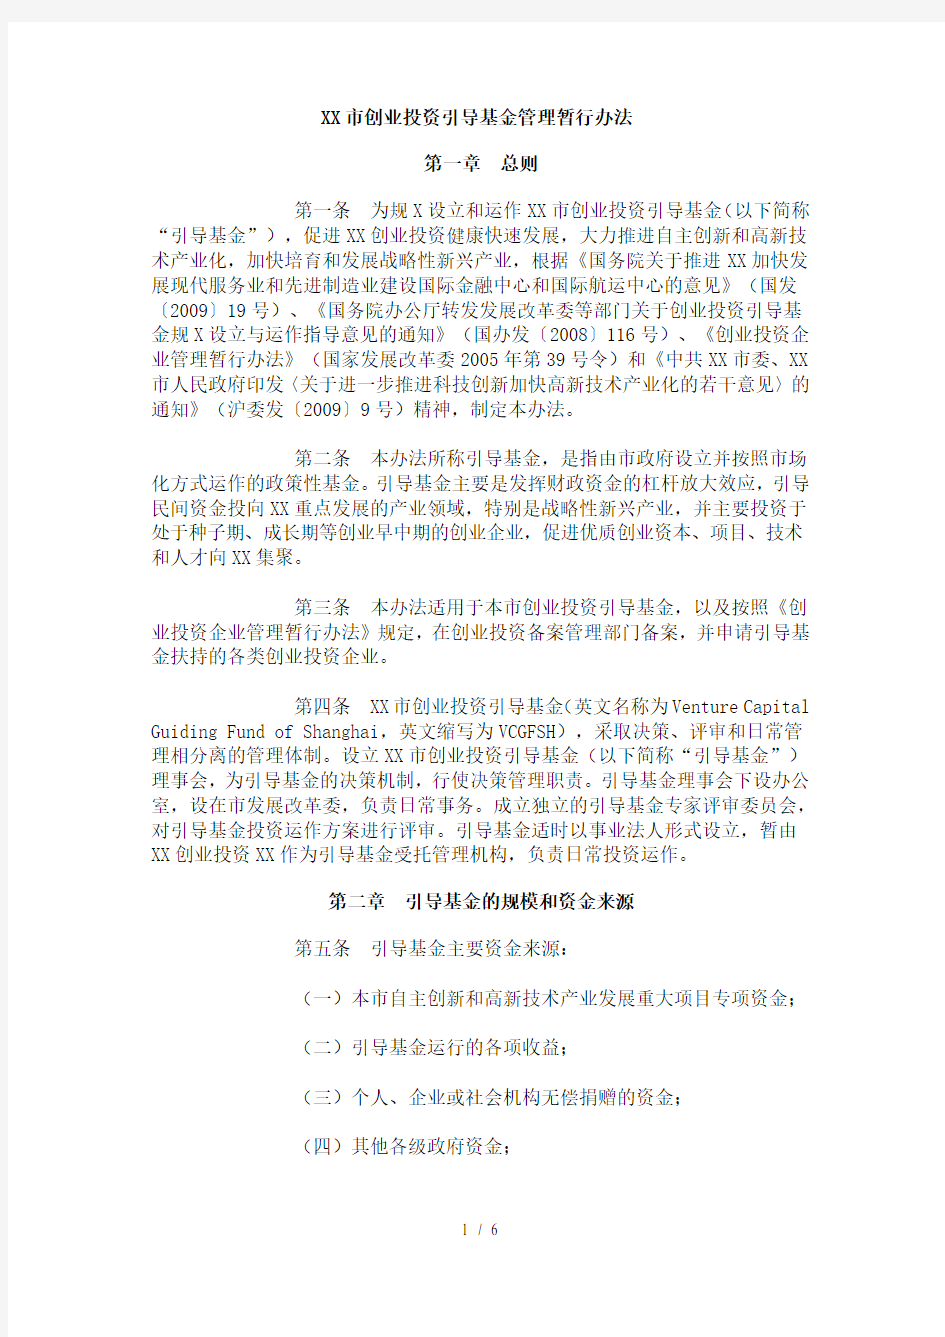 上海市创业投资引导基金管理暂行办法